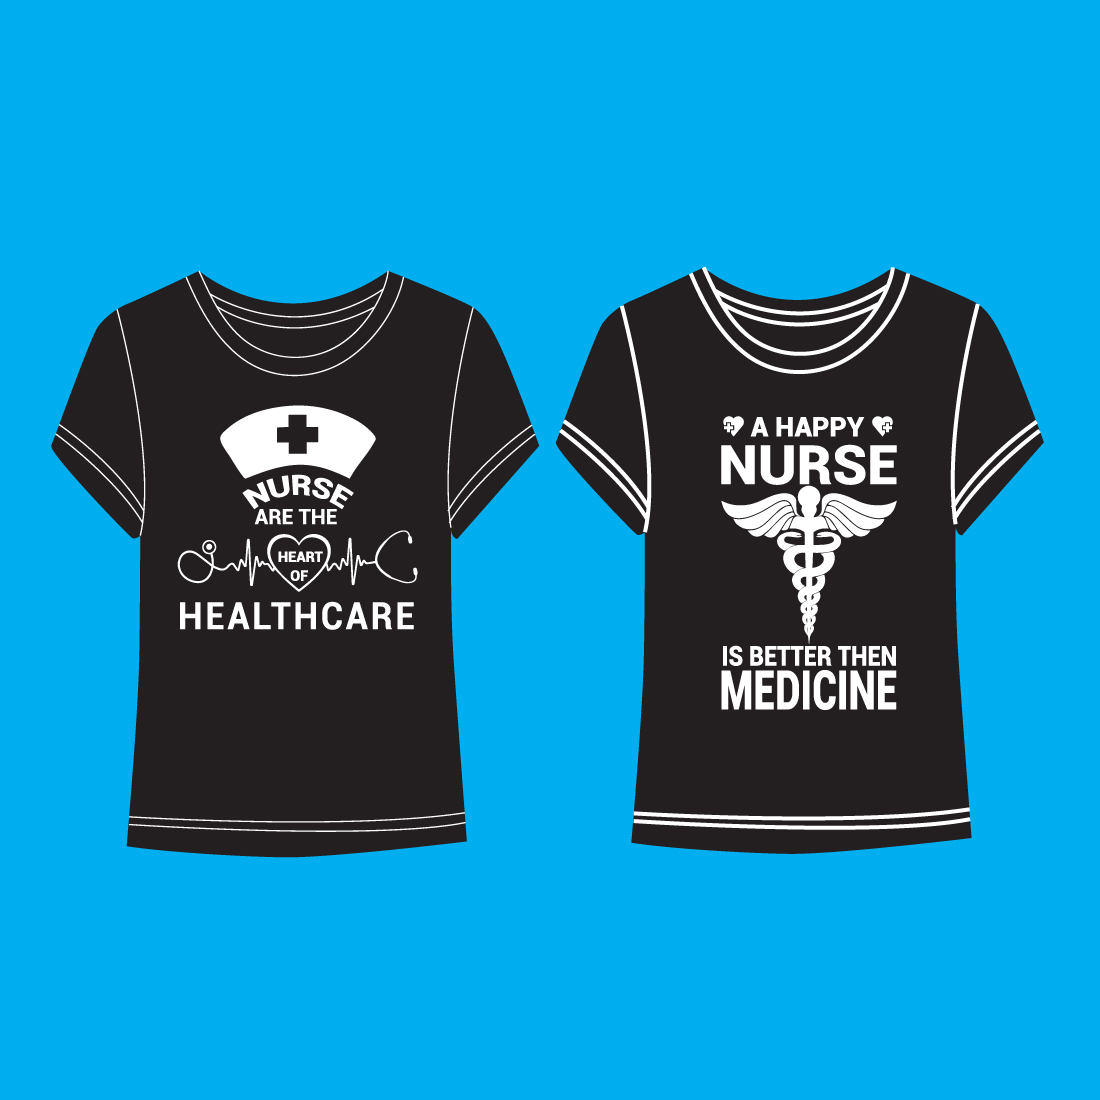 Nurse T-shirt Design preview image.